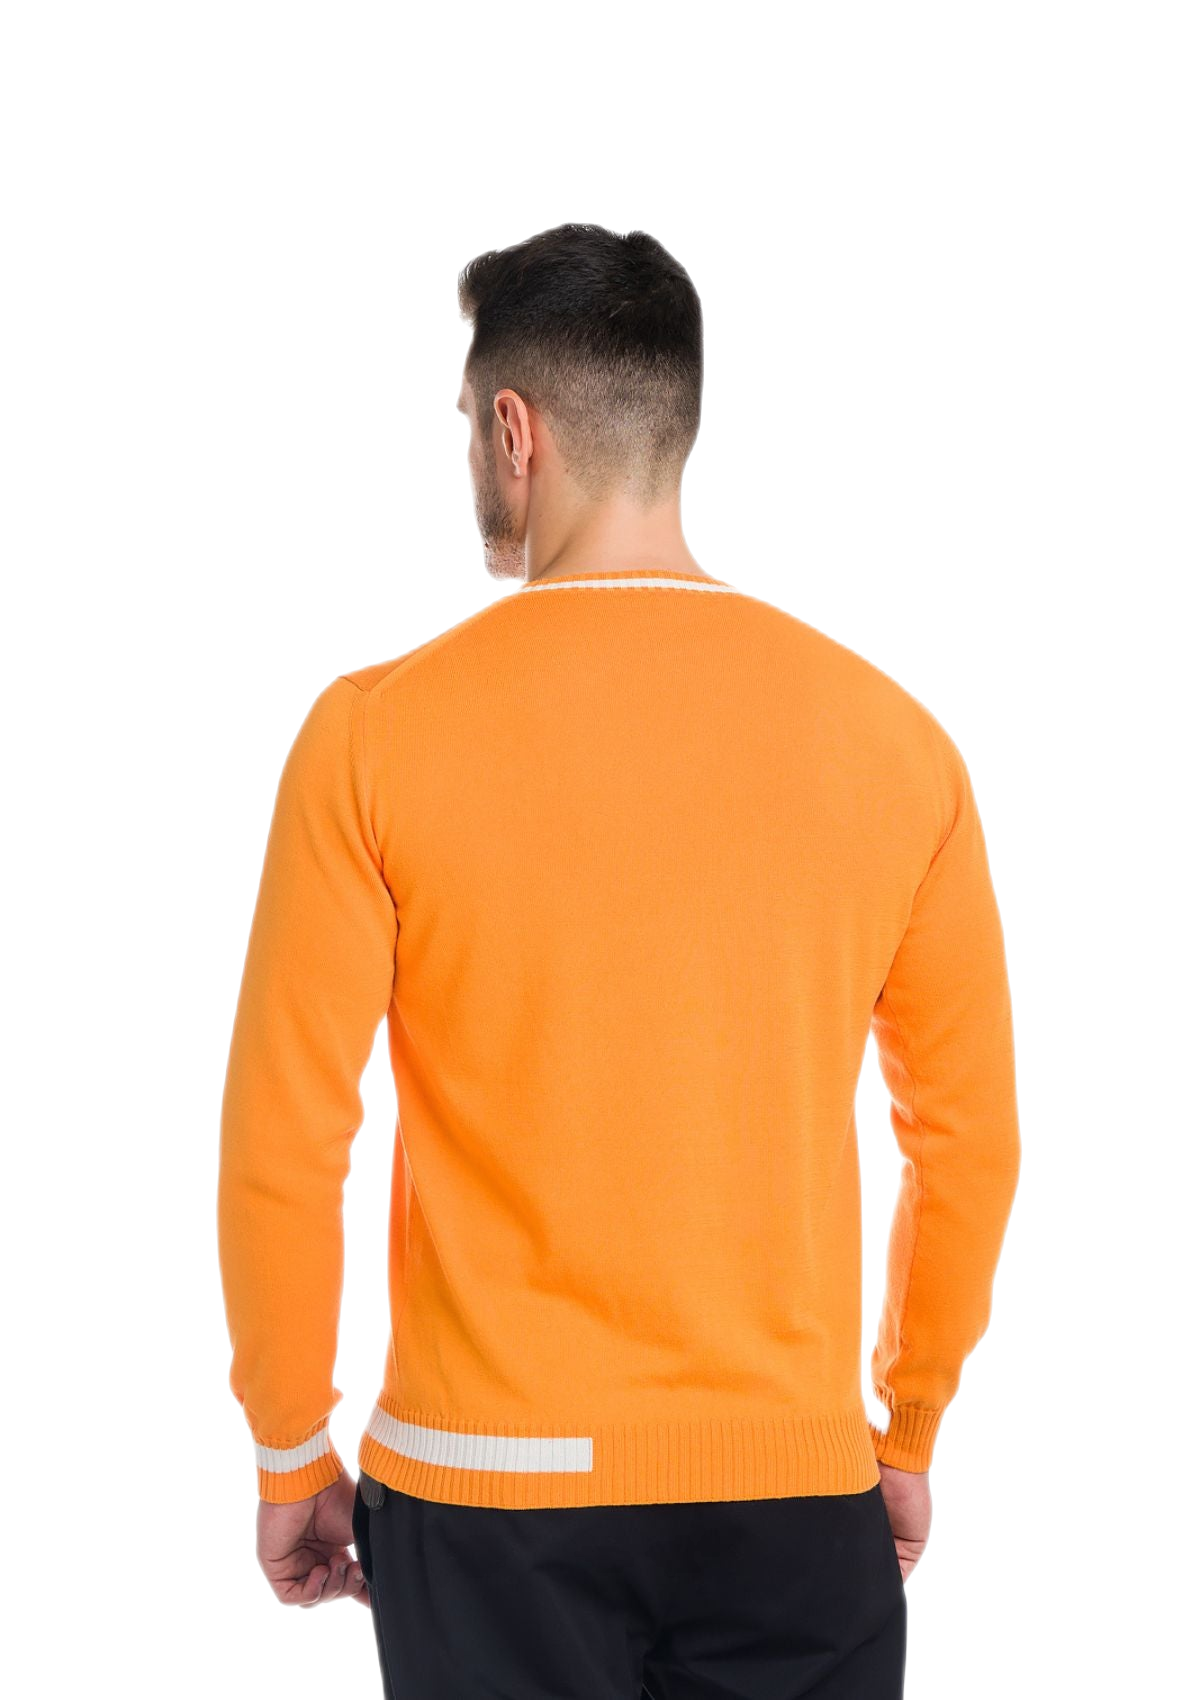 retro maglia girocollo uomo in cotone a maniche lunghe arancione